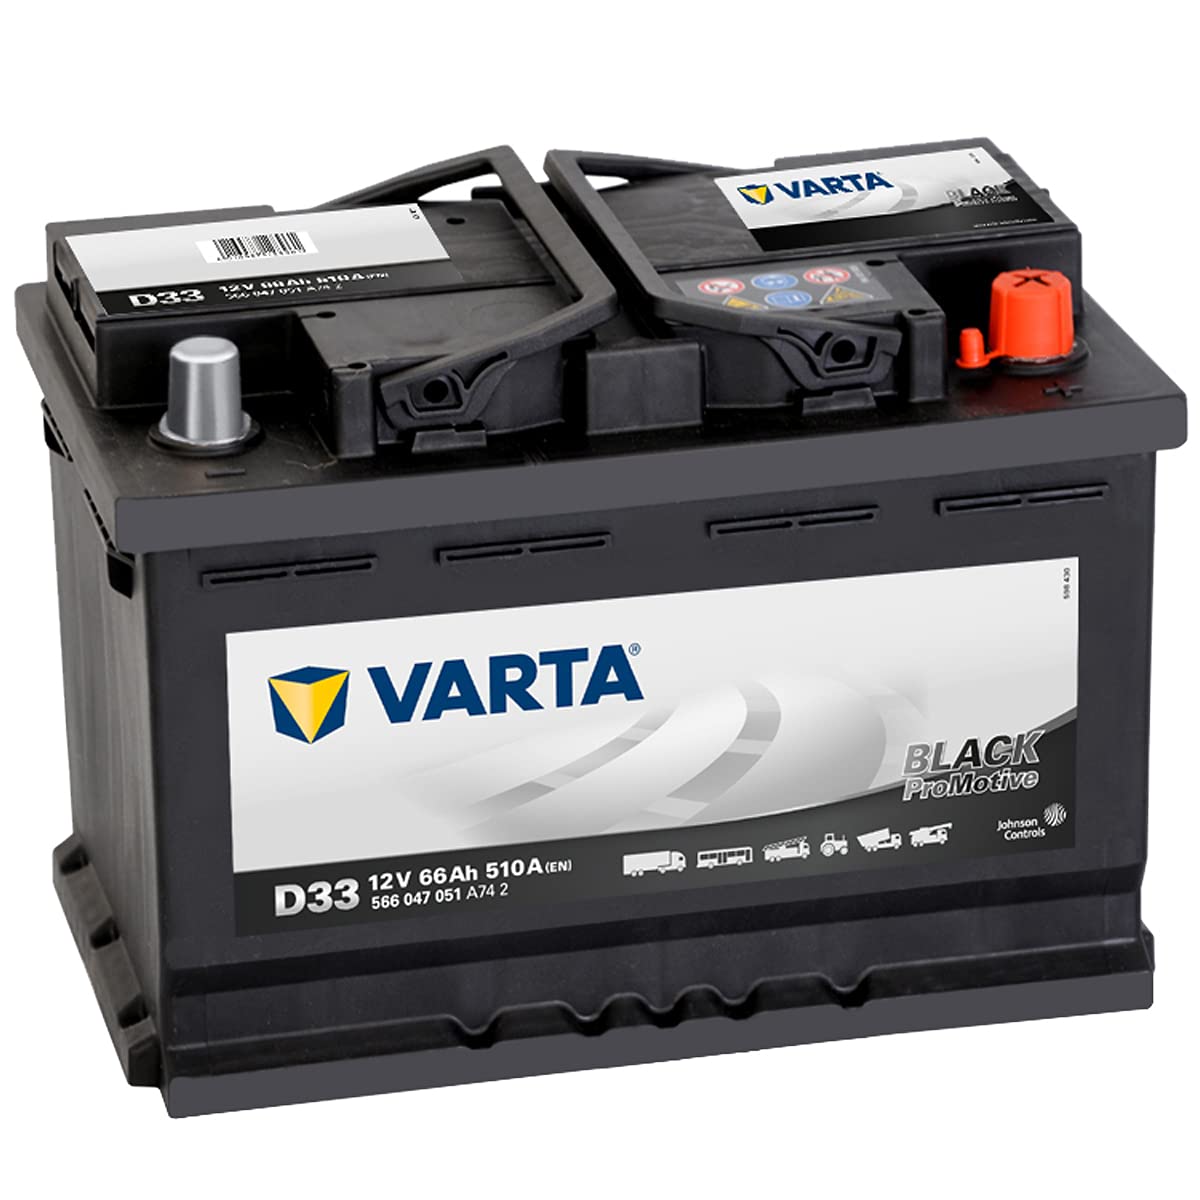 Varta 566047051A742 Starterbatterie Promotive HD 12 V 66 mAh von Varta